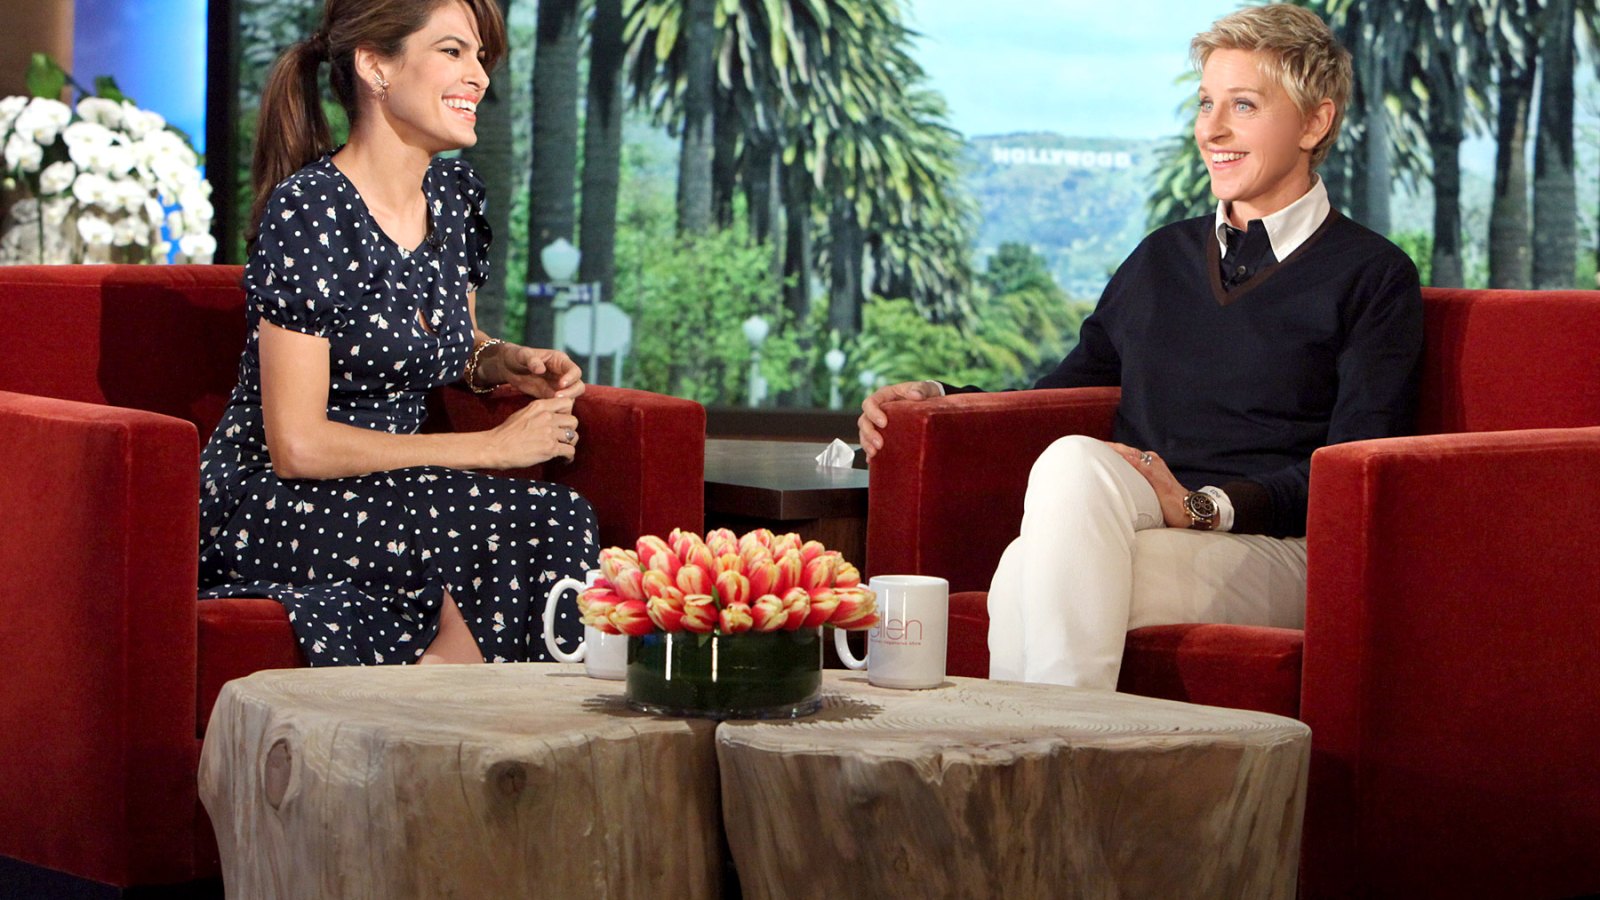 Eva Mendes on "The Ellen DeGeneres Show" on Feb. 12, 2014